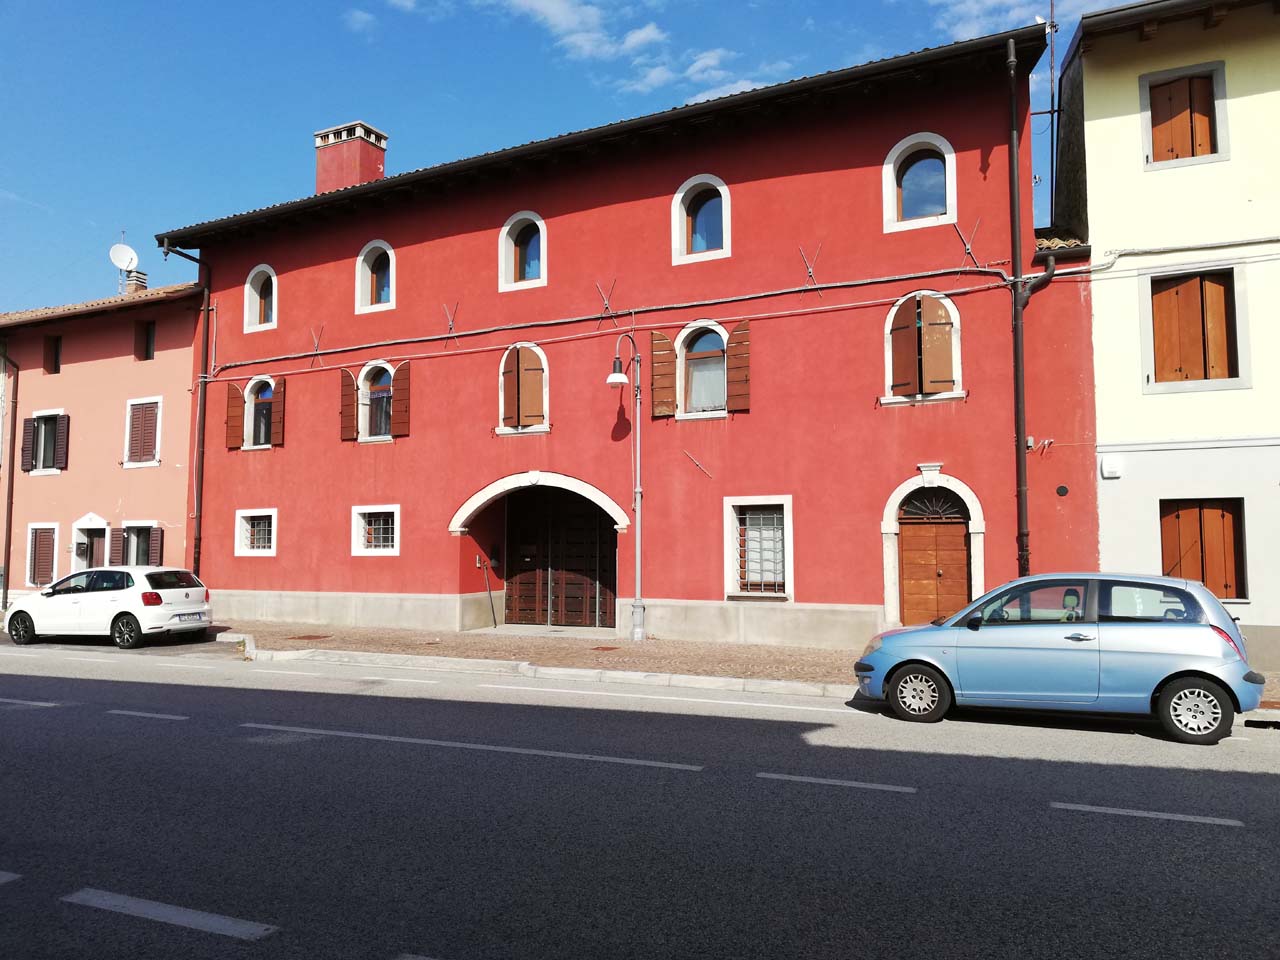 Casa dominicale Golob (casa, in linea) - Mariano del Friuli (GO) 